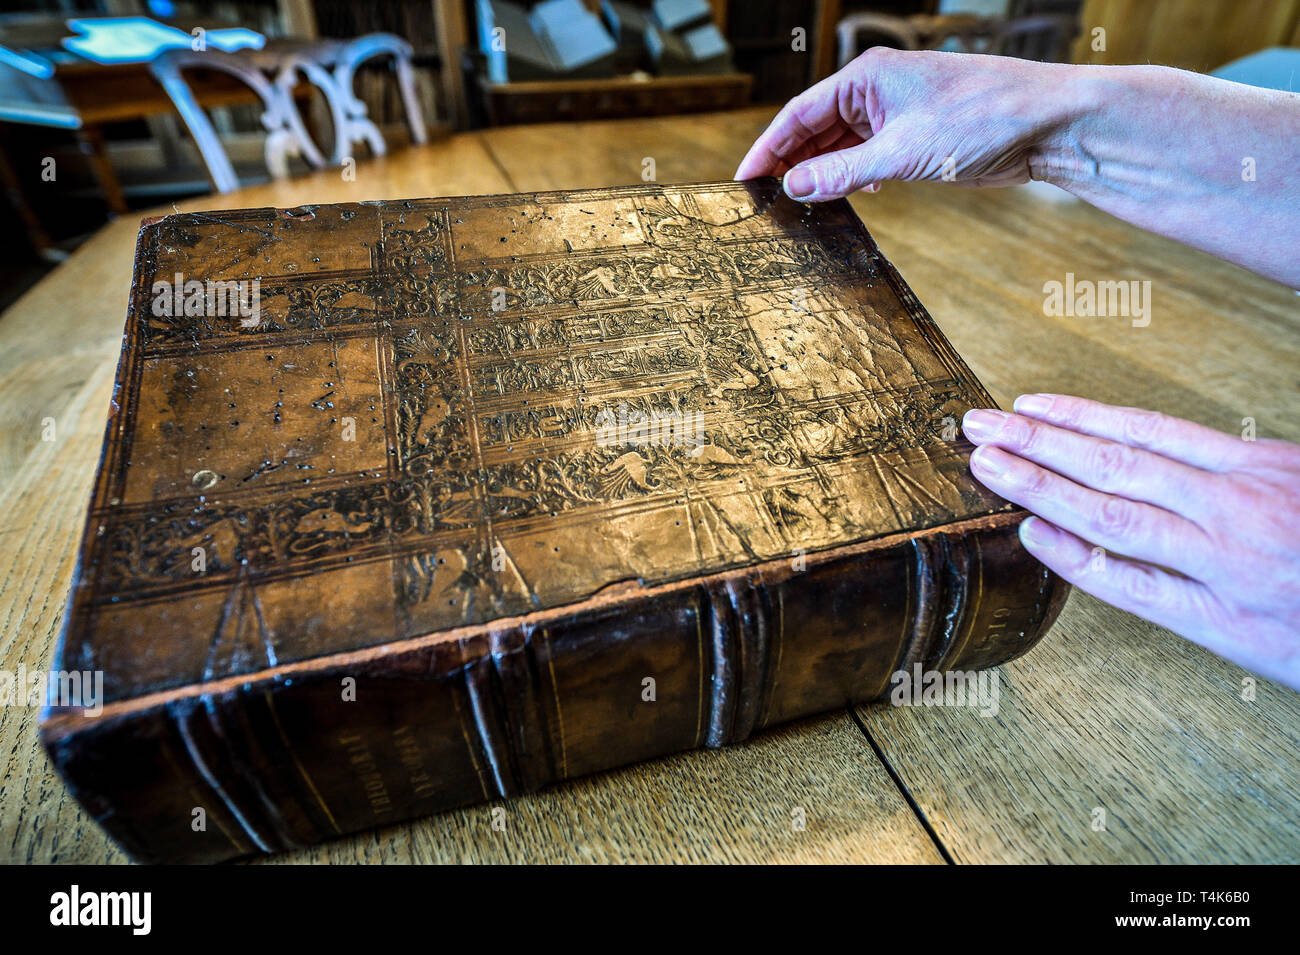 Eine Kopie einer komplizierten Leder geprägtes Buch mit Burgen und fabeltiere von 1519 in der Bibliothek des 15. Jahrhunderts die Kathedrale von Salisbury, wo ein Projekt zum Katalog, sauber und finden Sie mehr über die seltene Buch Sammlung ist im Gange. Stockfoto